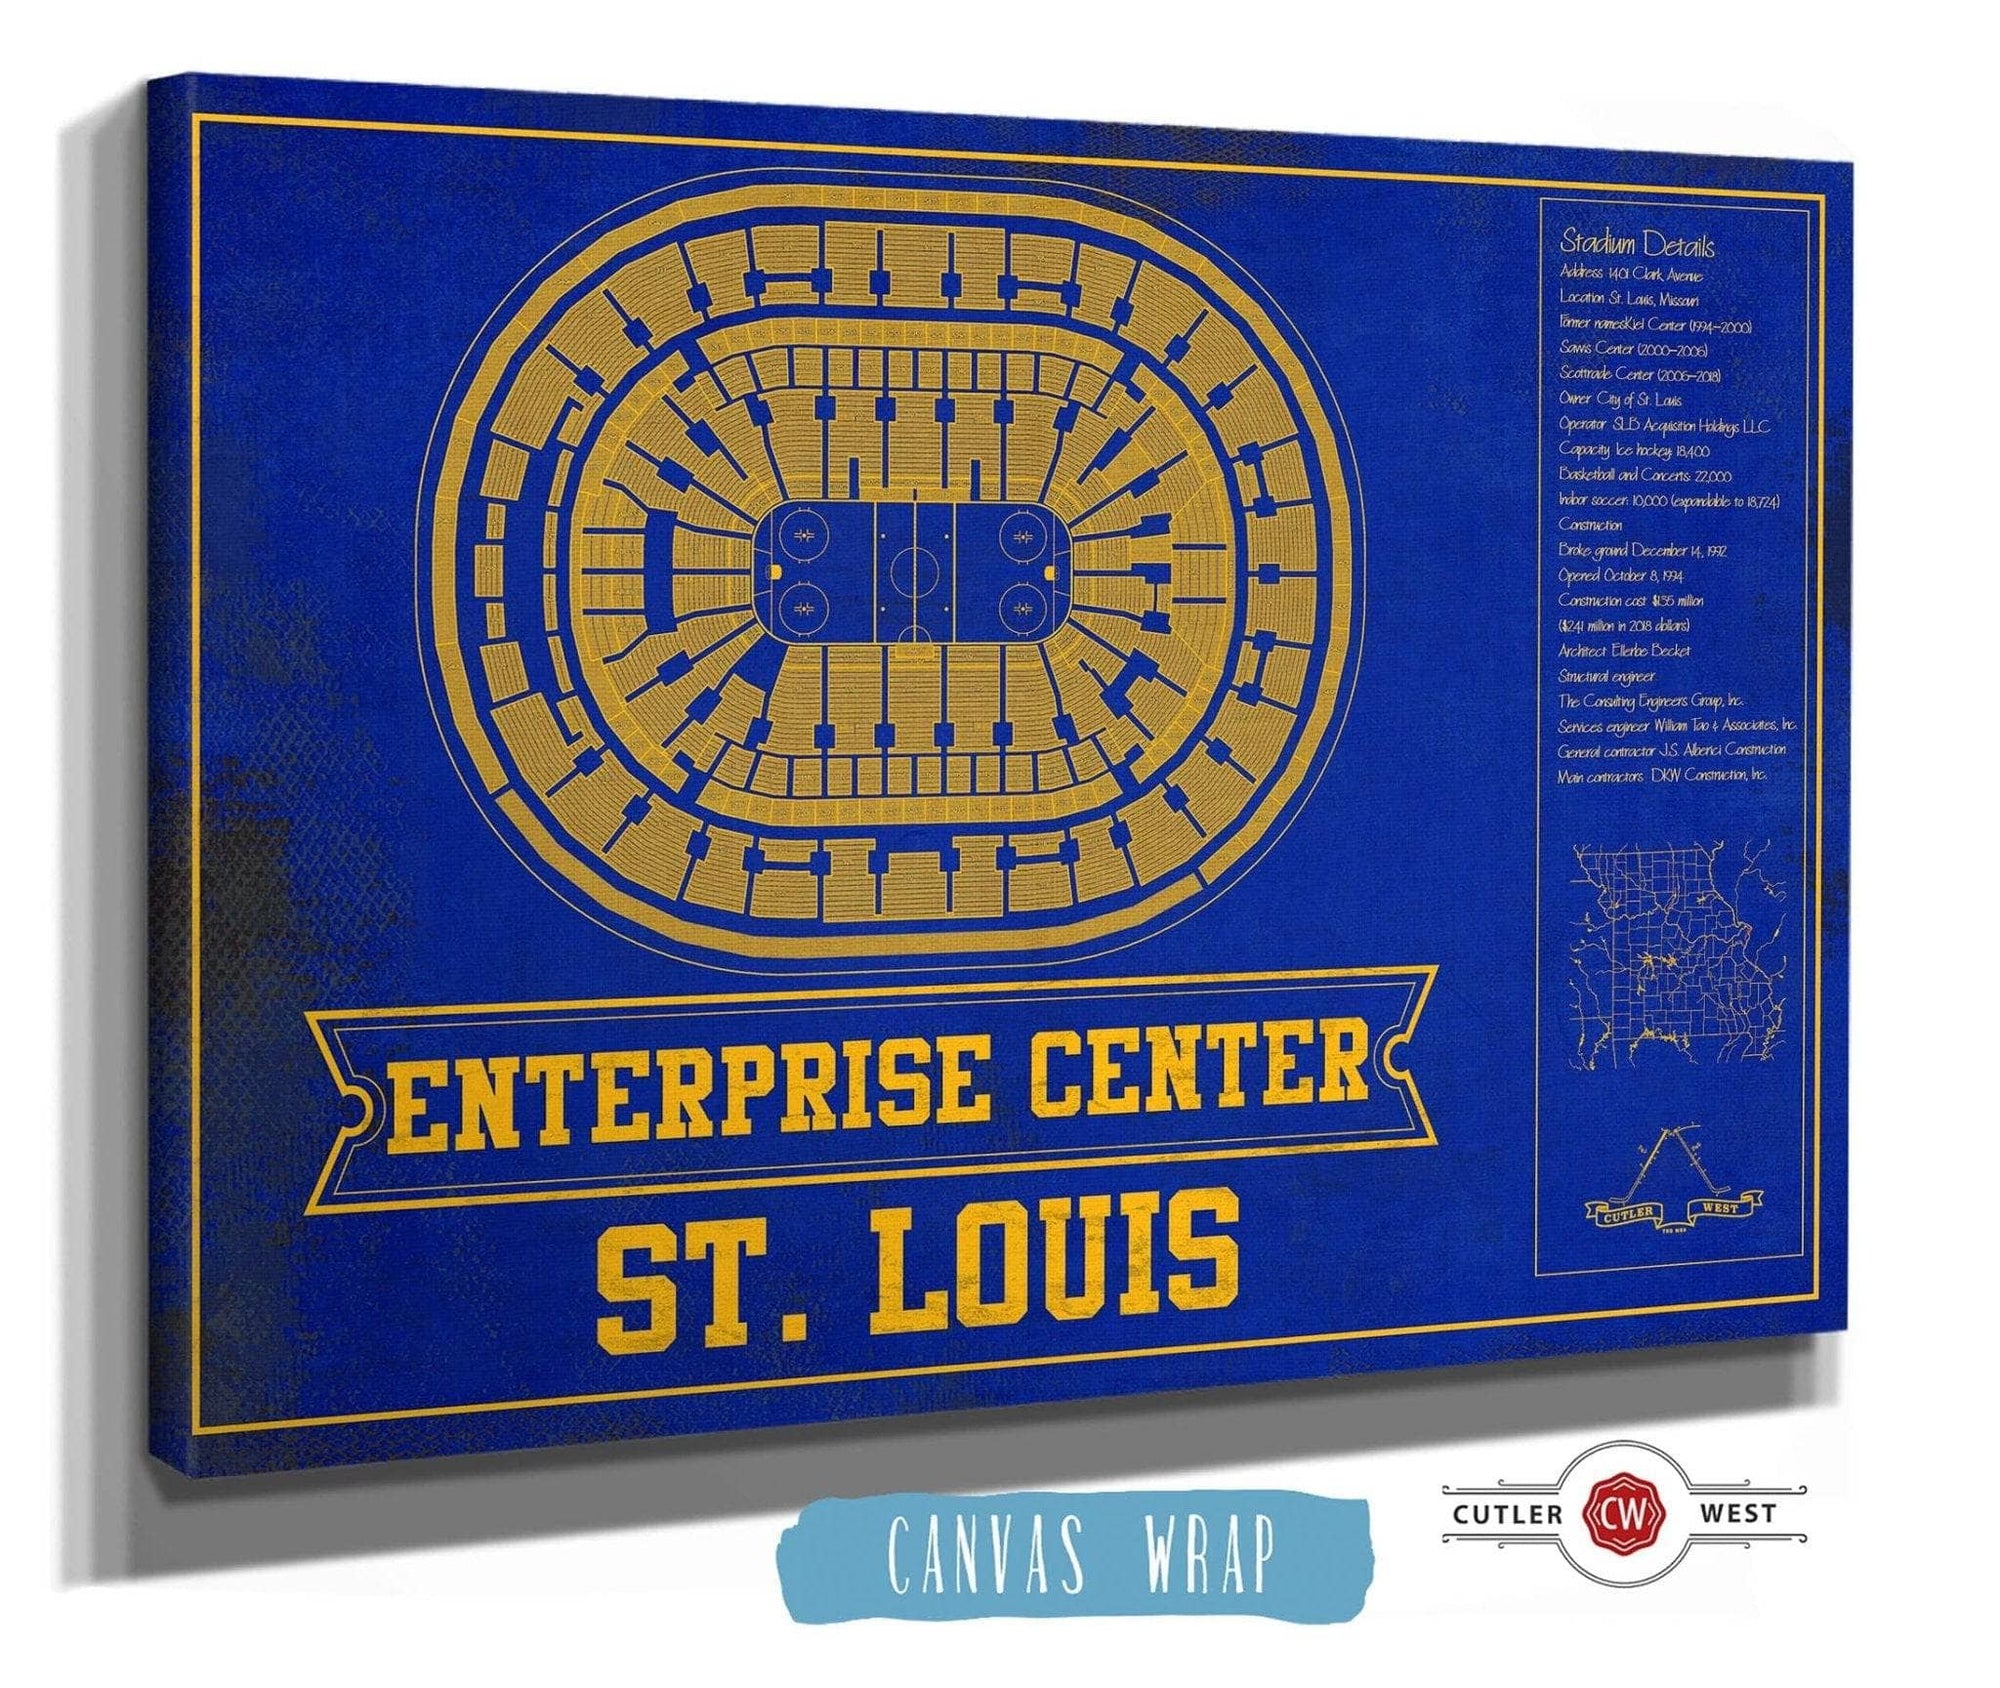 Cutler West 14" x 11" / Stretched Canvas Wrap St. Louis Blues Team Colors - Enterprise Center Vintage Hockey Blueprint NHL Print 933350221_81187